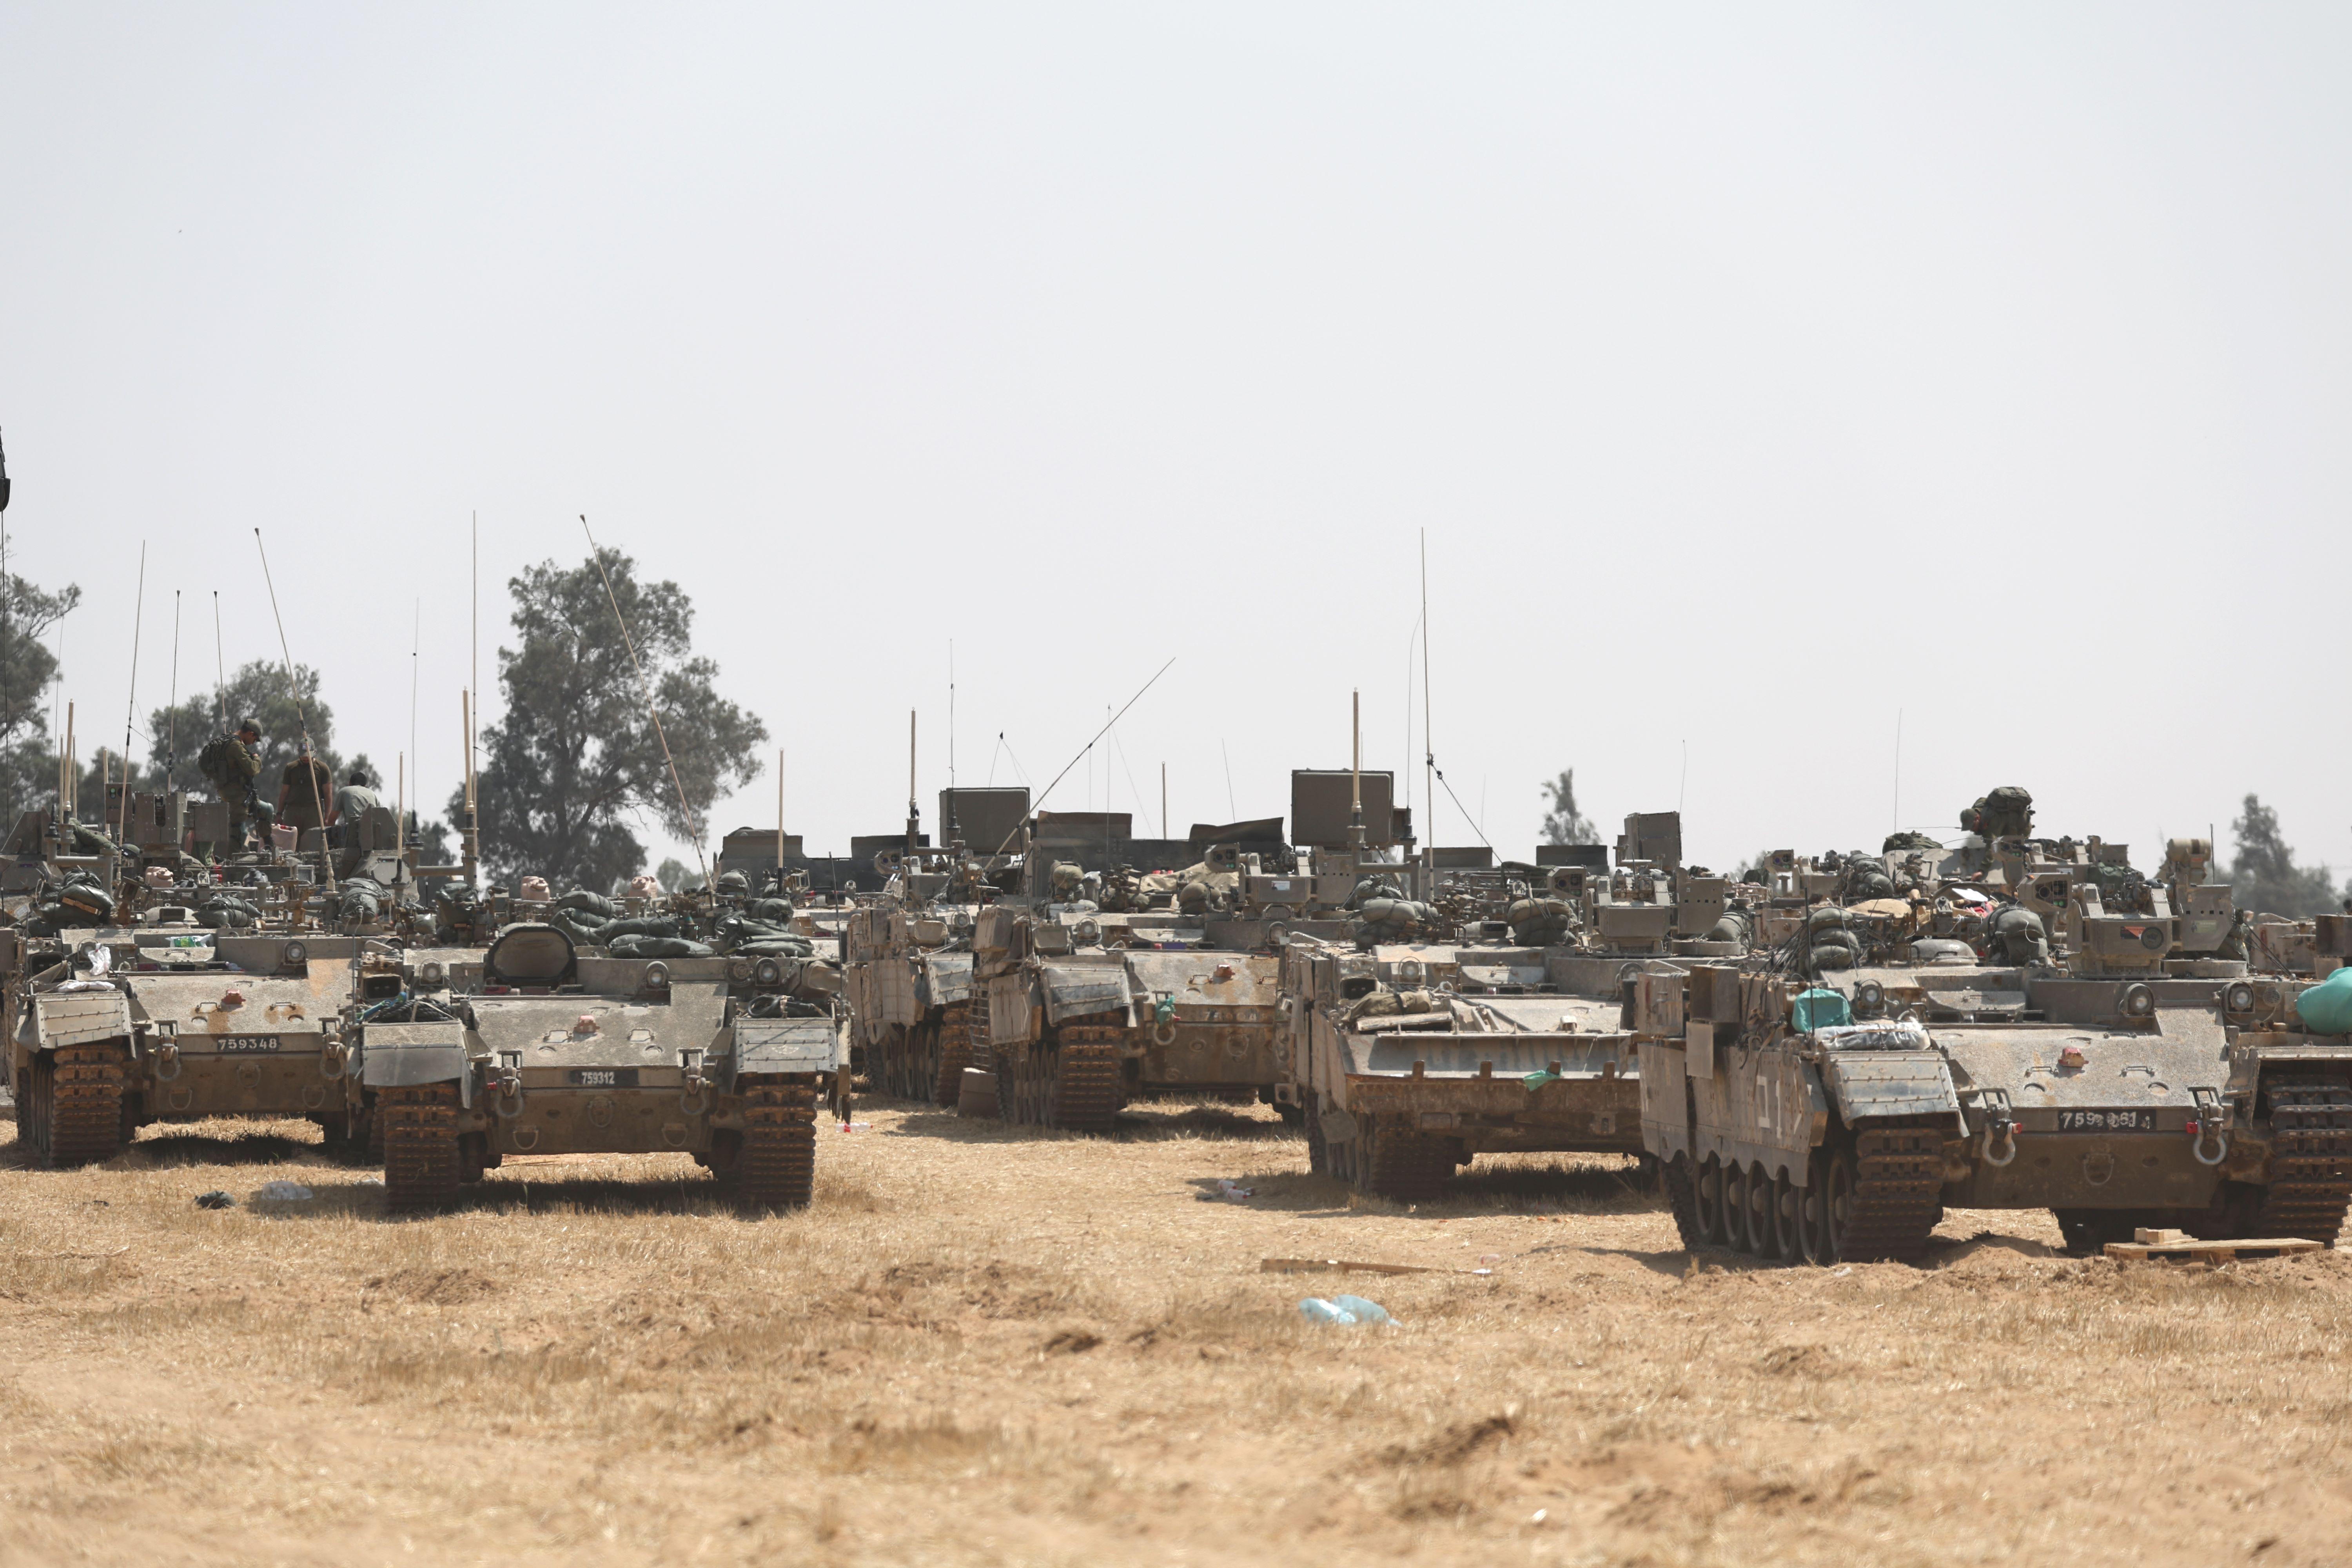 جنود إسرائيليون بمركبات عسكرية يتجمعون في موقع على الحدود الجنوبية الإسرائيلية مع قطاع غزة، بالقرب من مدينة رفح الفلسطينية